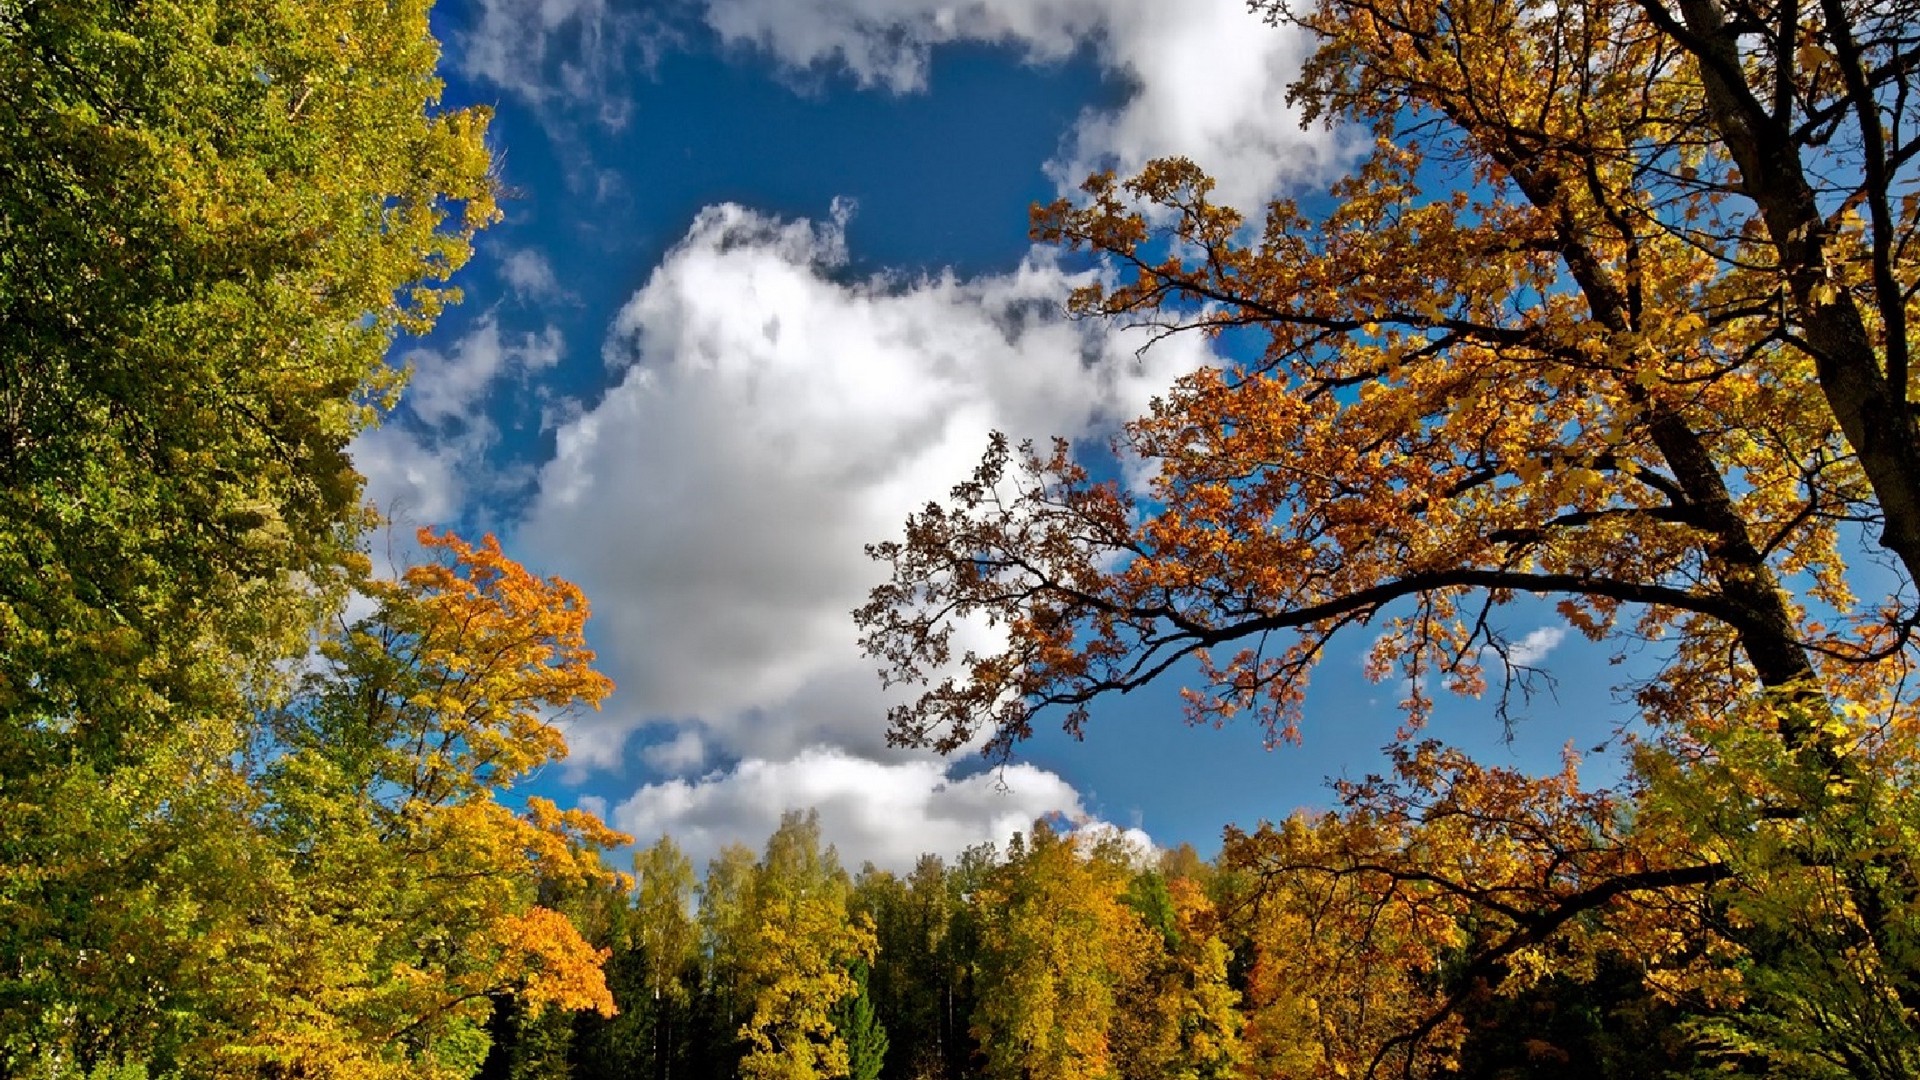 1920x1080 wallpapers: Herbst, Himmel, Bäume, Landschaft, gorgeous (image)